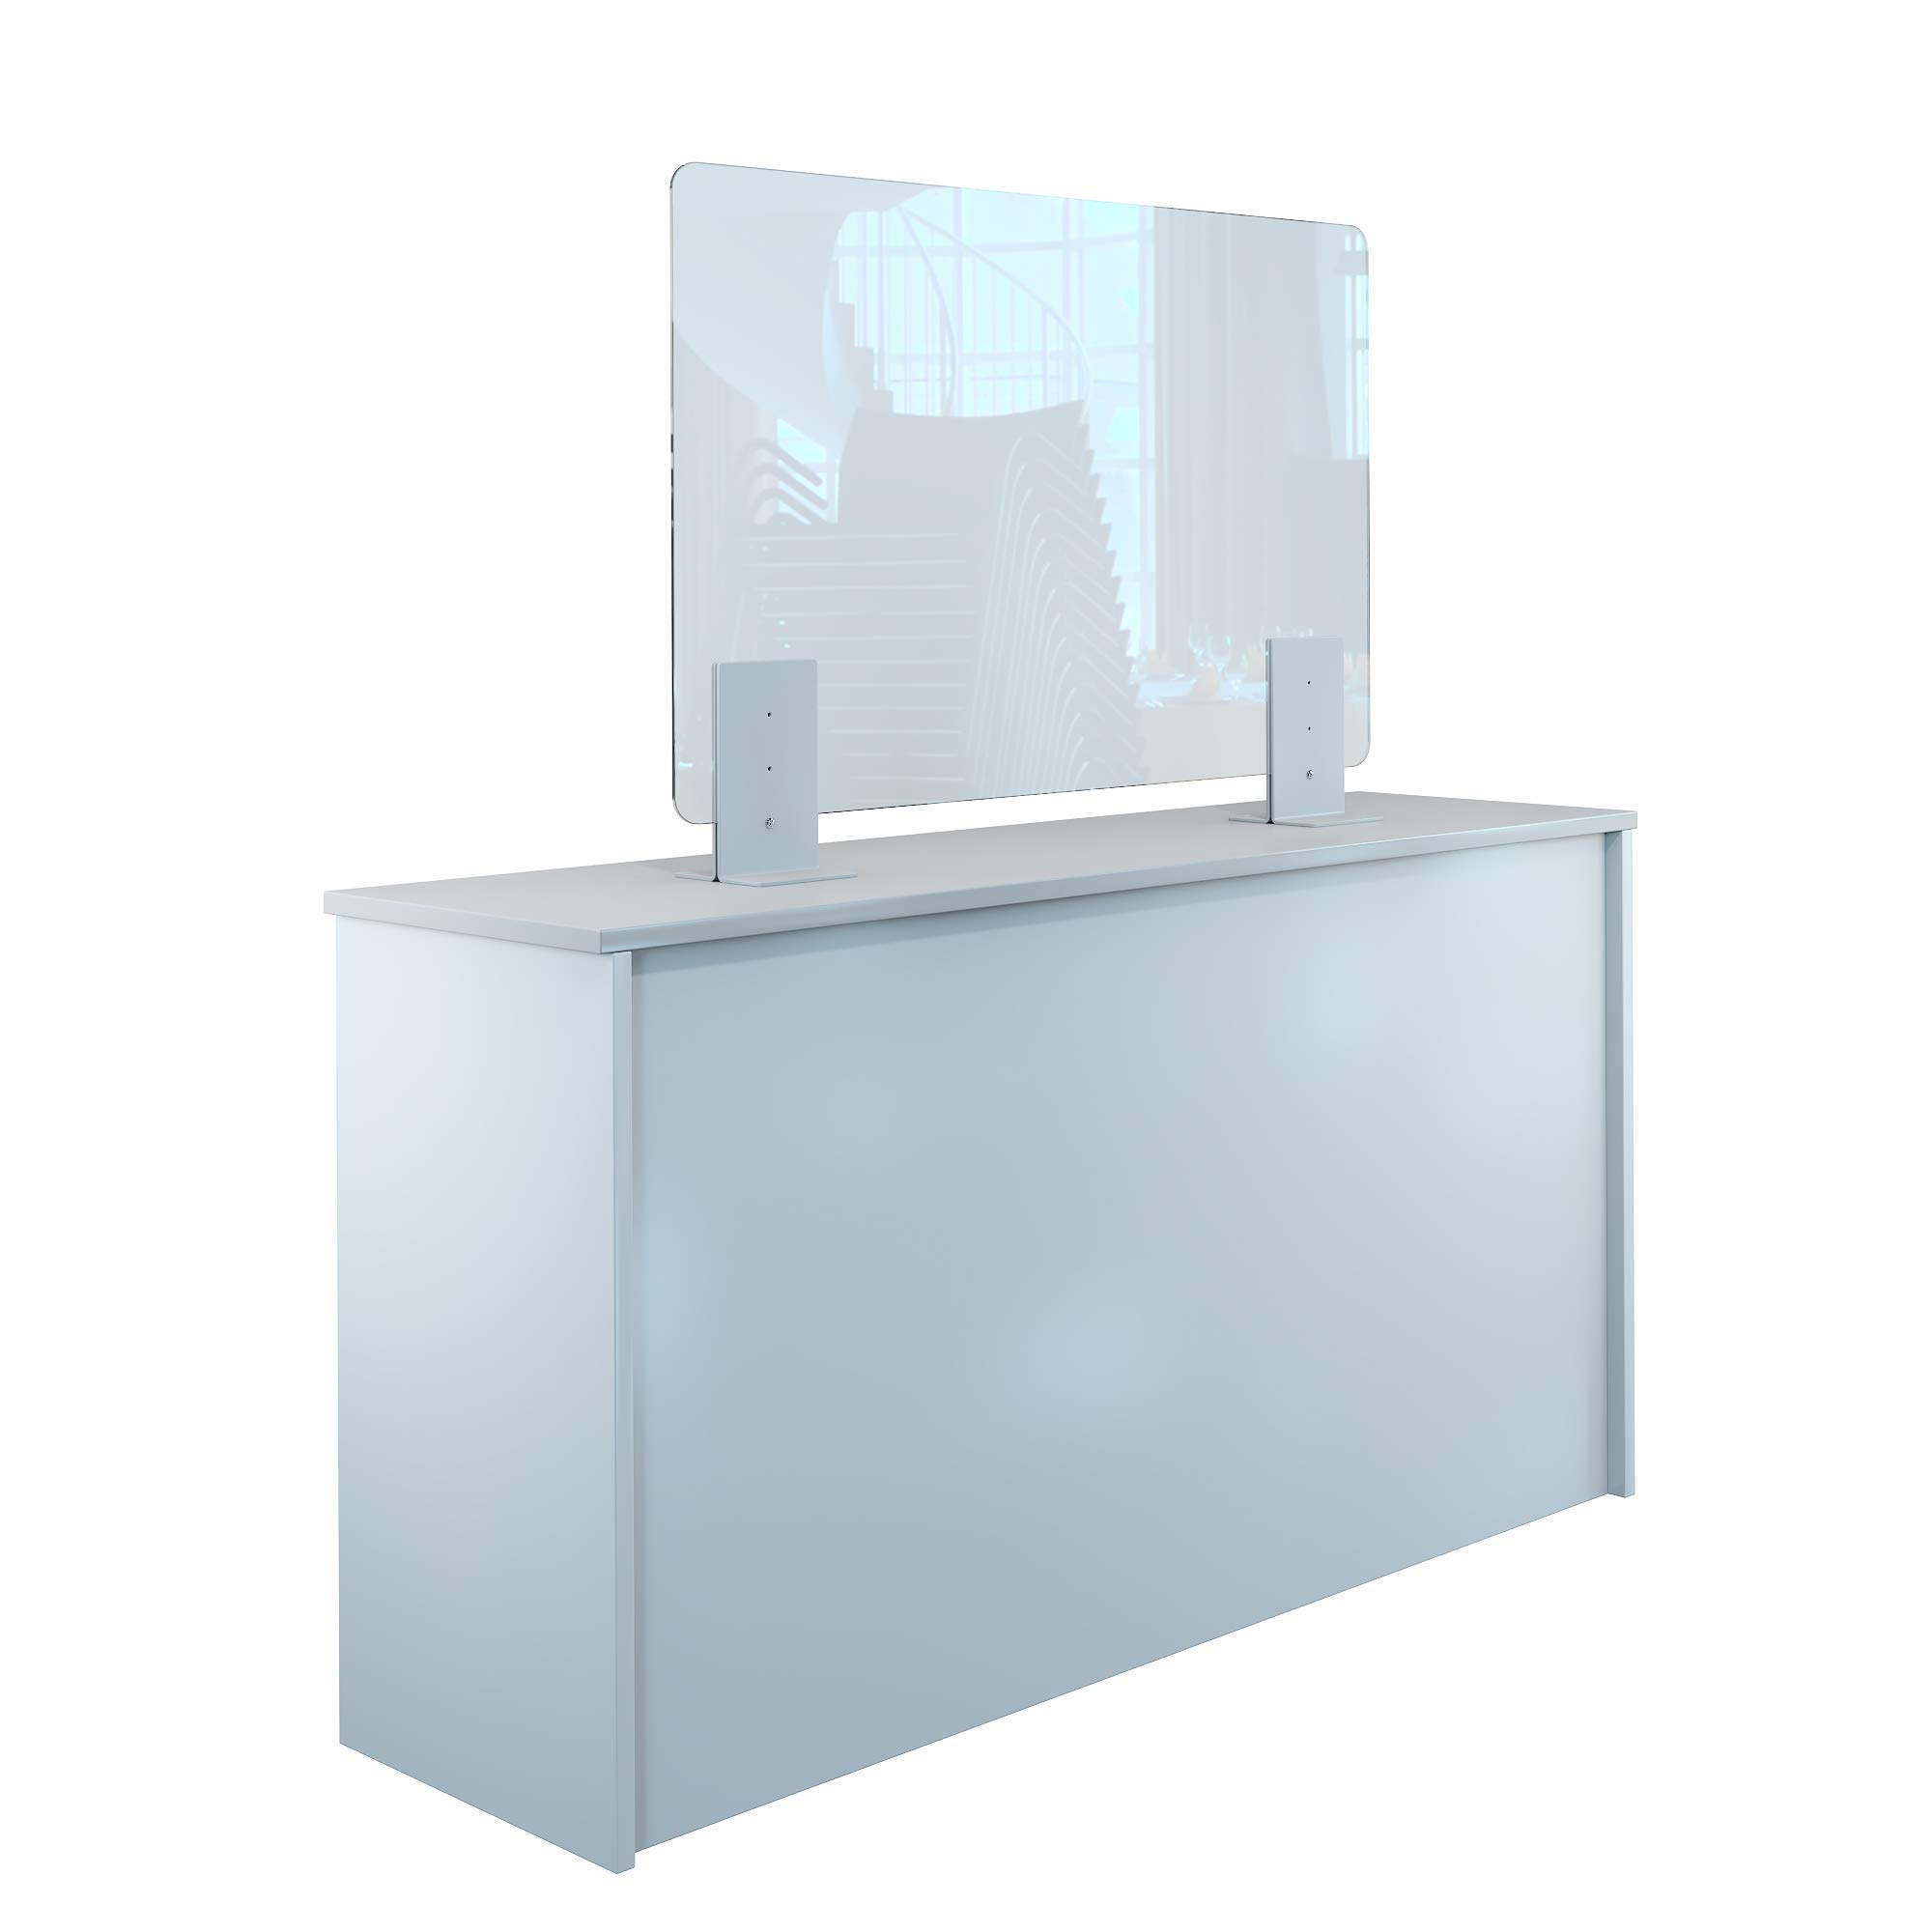 Rulopak Thekenaufsteller Trennwand / Spuckschutz Acrylglas klar mit Metallfüßen Weiß (Höhe justierbar) (B 100 x H 60 cm)